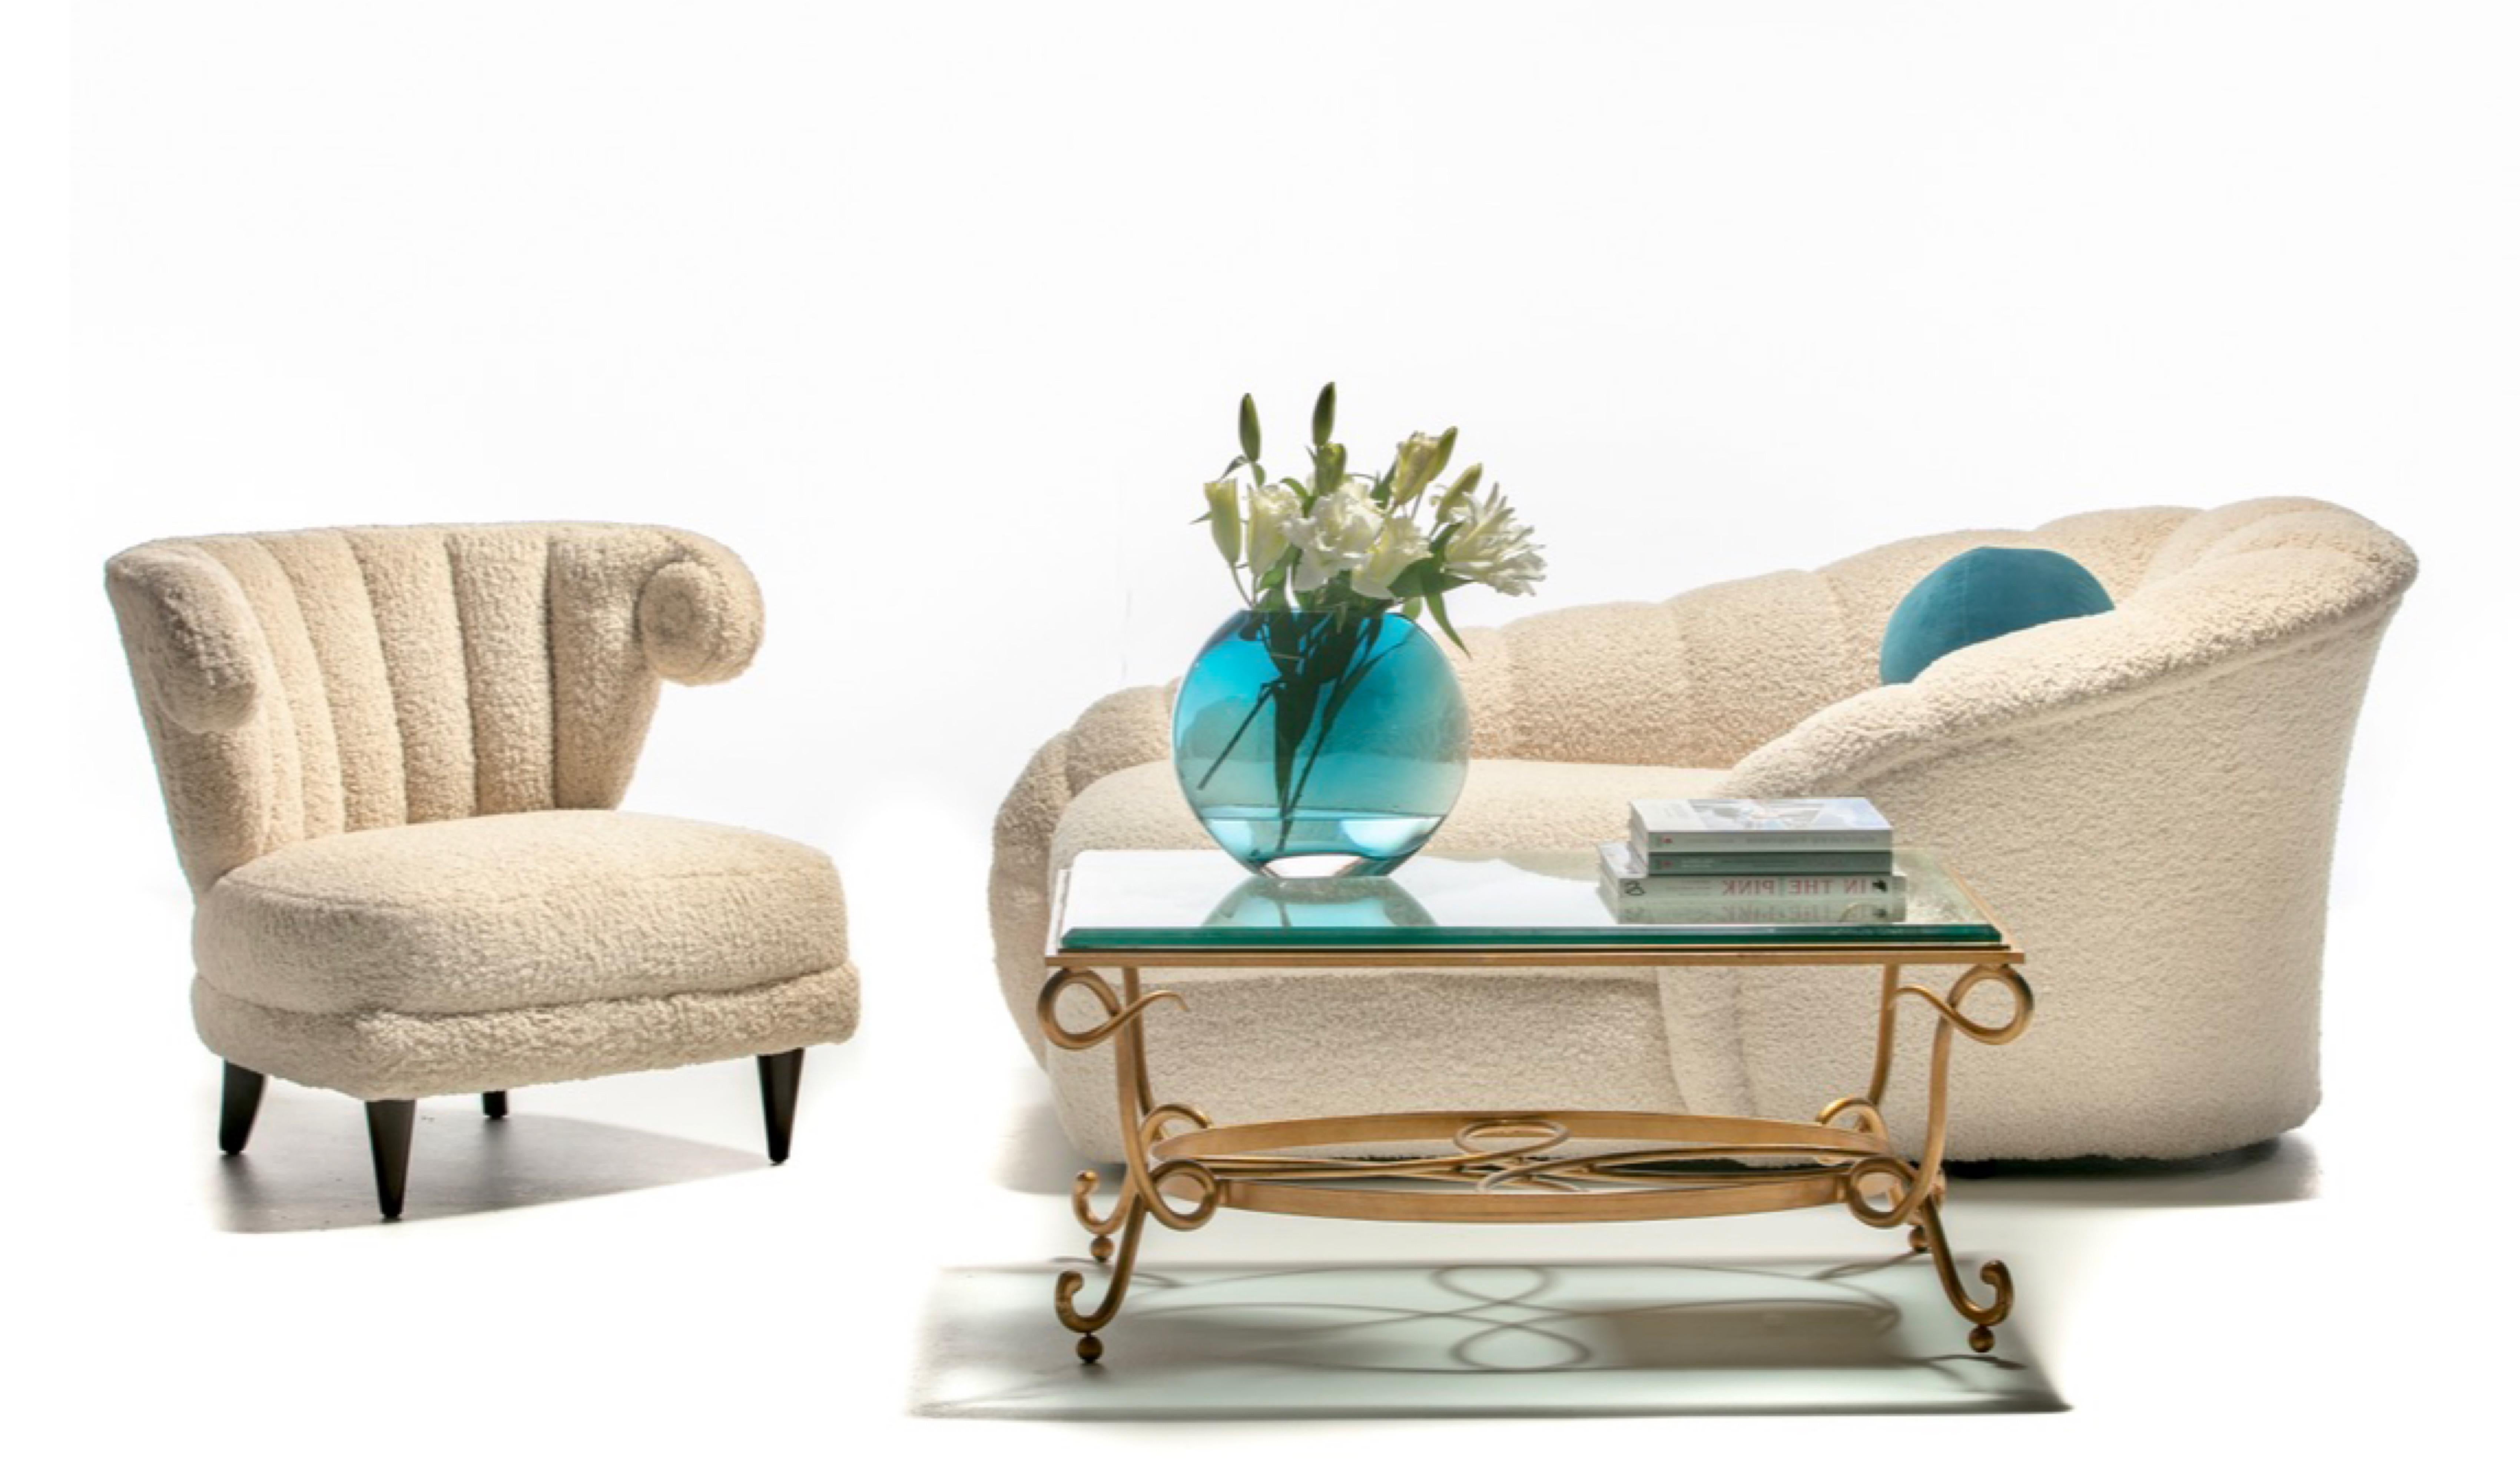 Le confort luxueux et enveloppant décrit le mieux cette chaise longue post-moderne sexy conçue par Vladimir Kagan pour Directional, nouvellement recouverte par des professionnels d'un bouclier blanc ivoire très doux et durable. Célèbre pour son